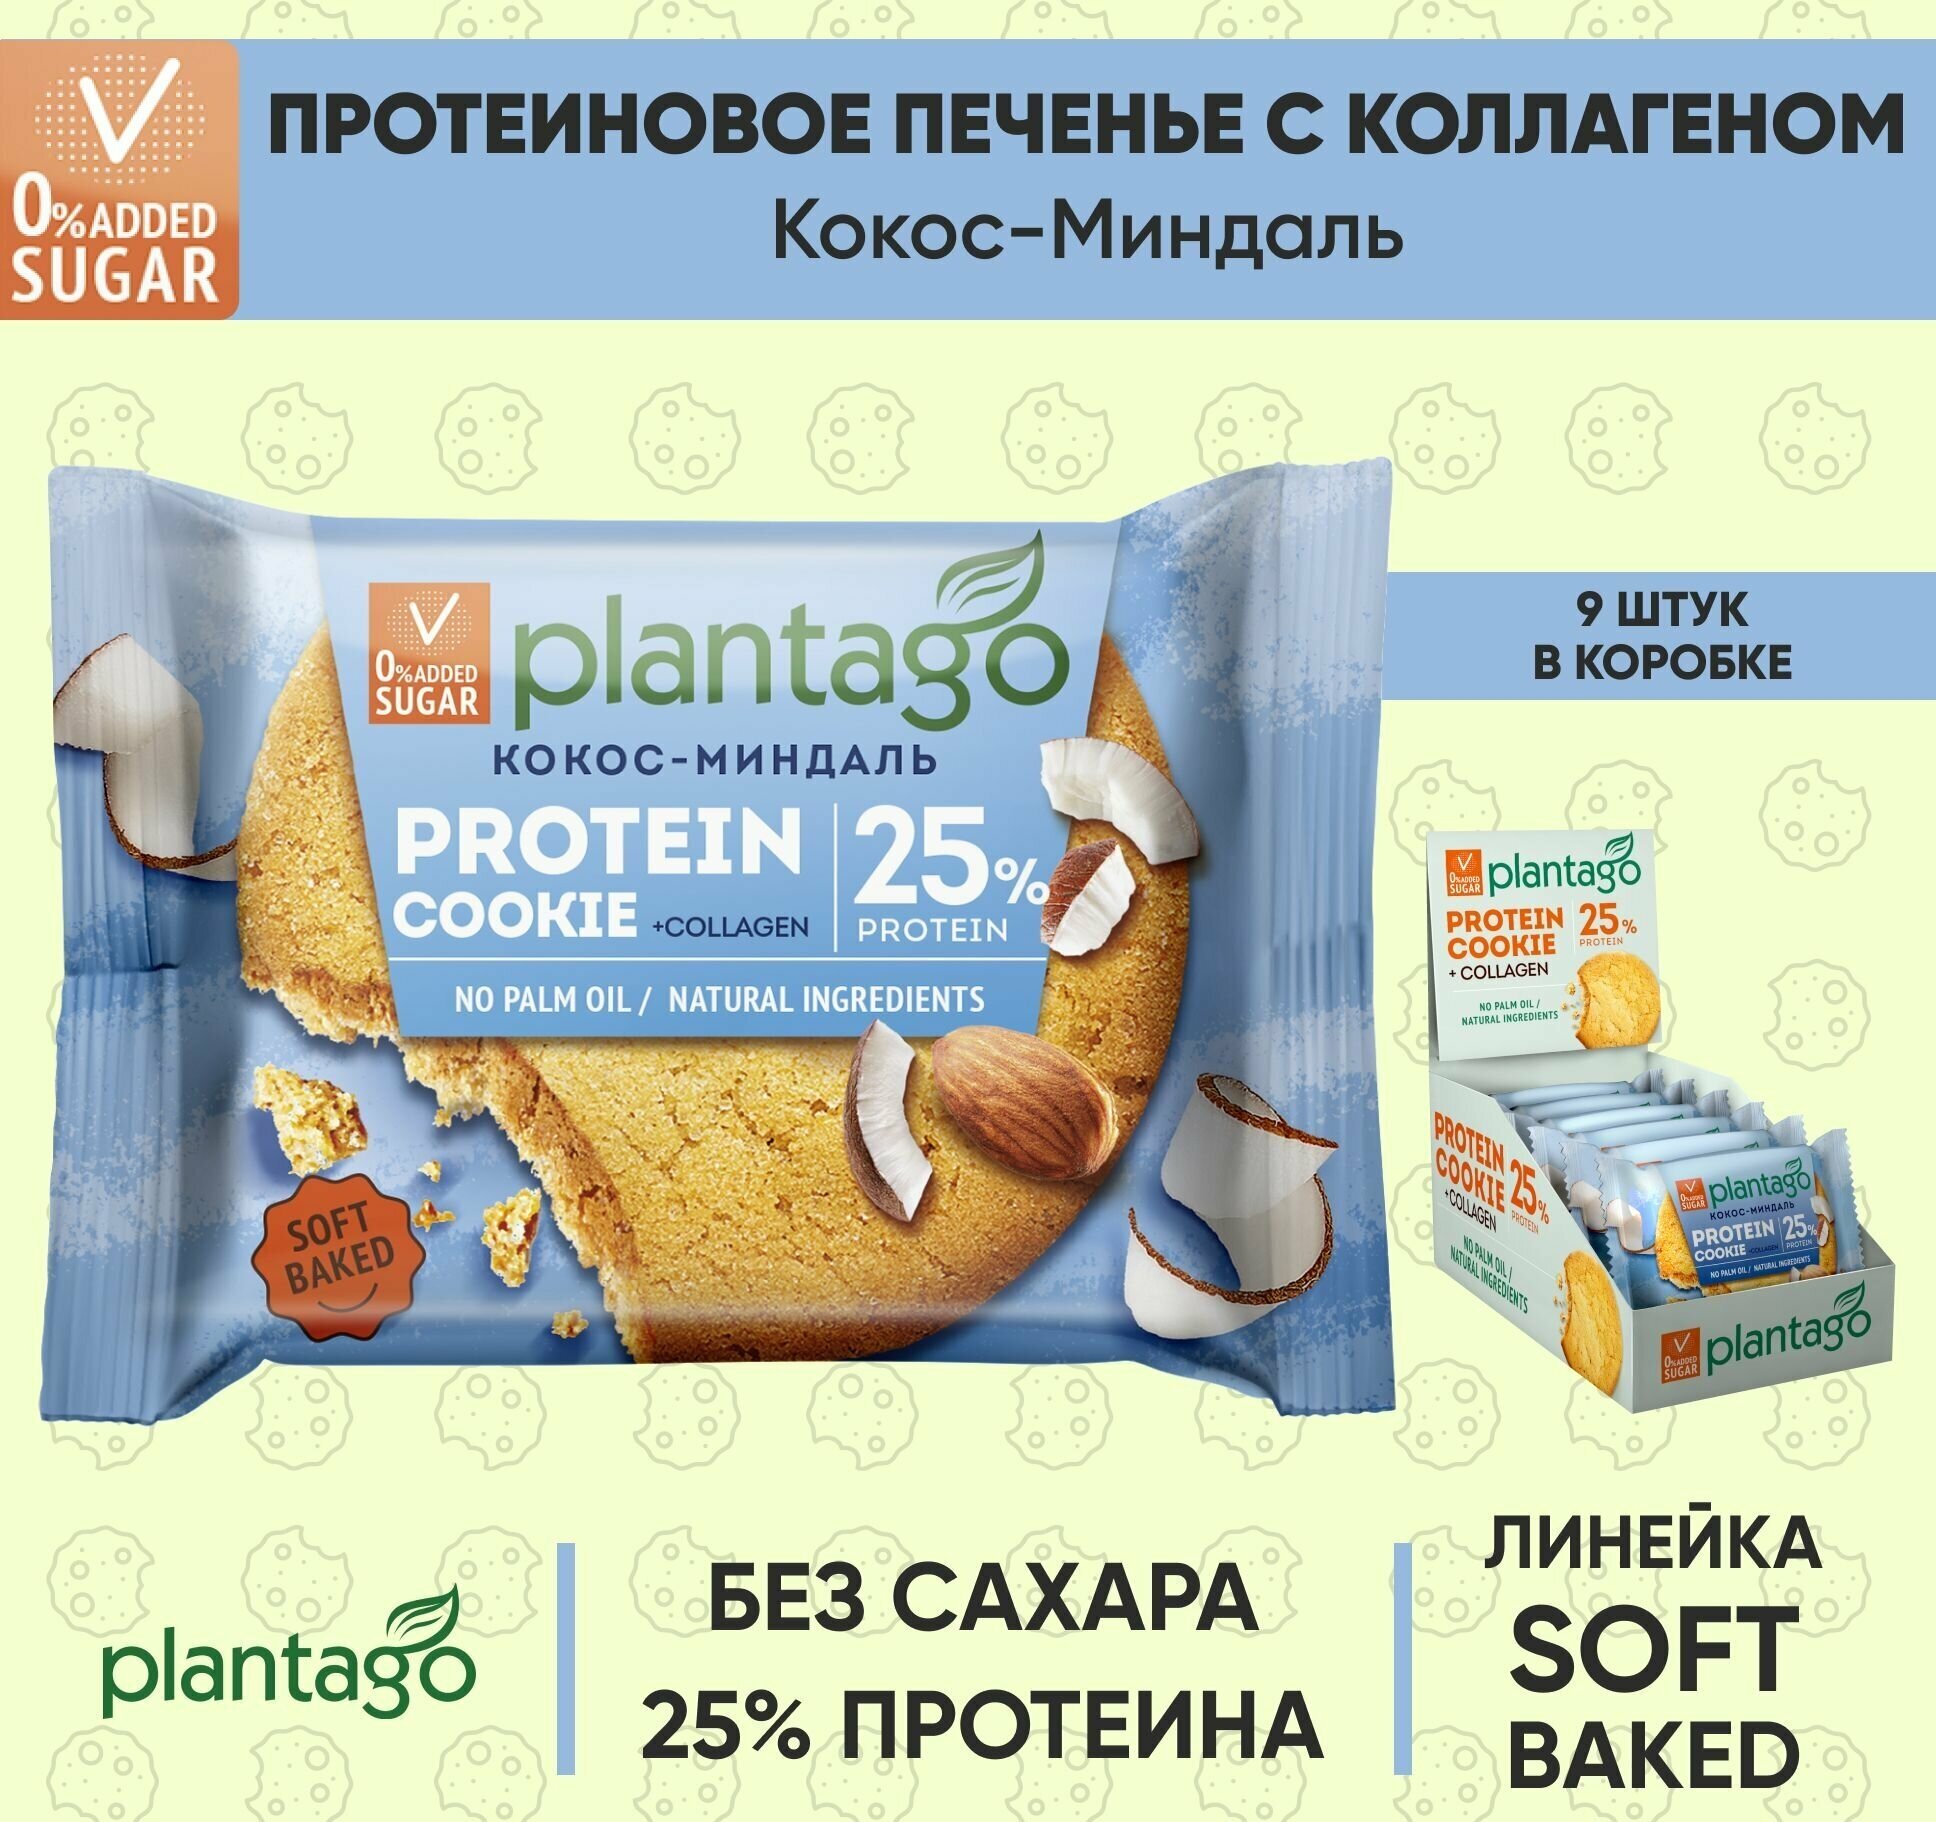 Plantago Печенье протеиновое с высоким содержанием белка Protein Cookie со вкусом Кокос-Миндаль 25%, 9 шт. по 40 гр/ с коллагеном/